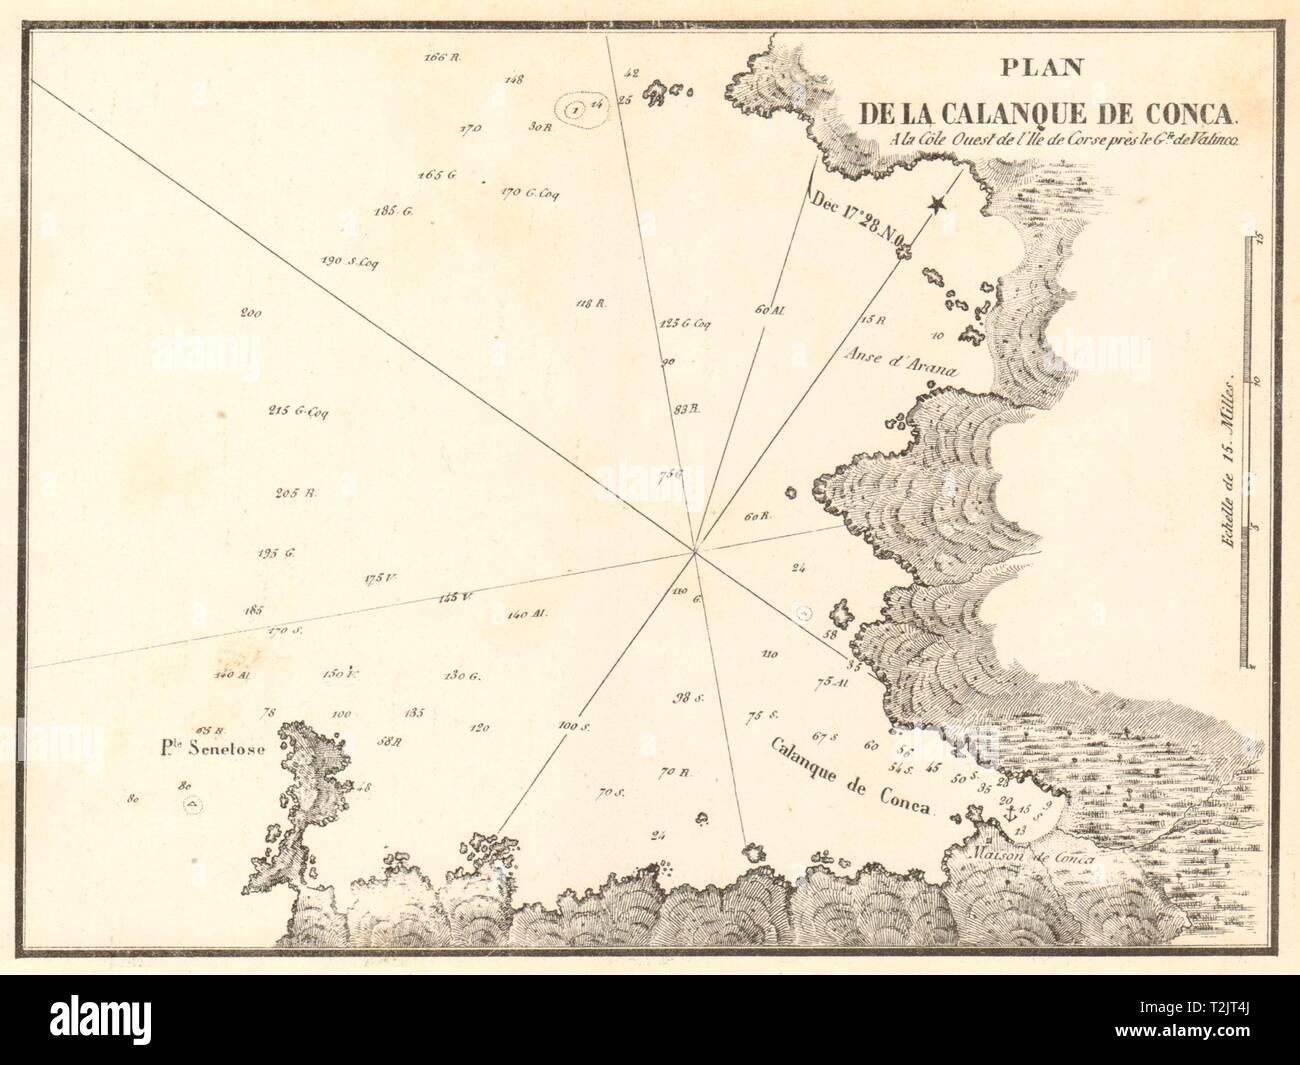 Plan de la Calanque de Conca. Golfe de Valinco. Corse Corsica. GAUTTIER 1851 map Stock Photo